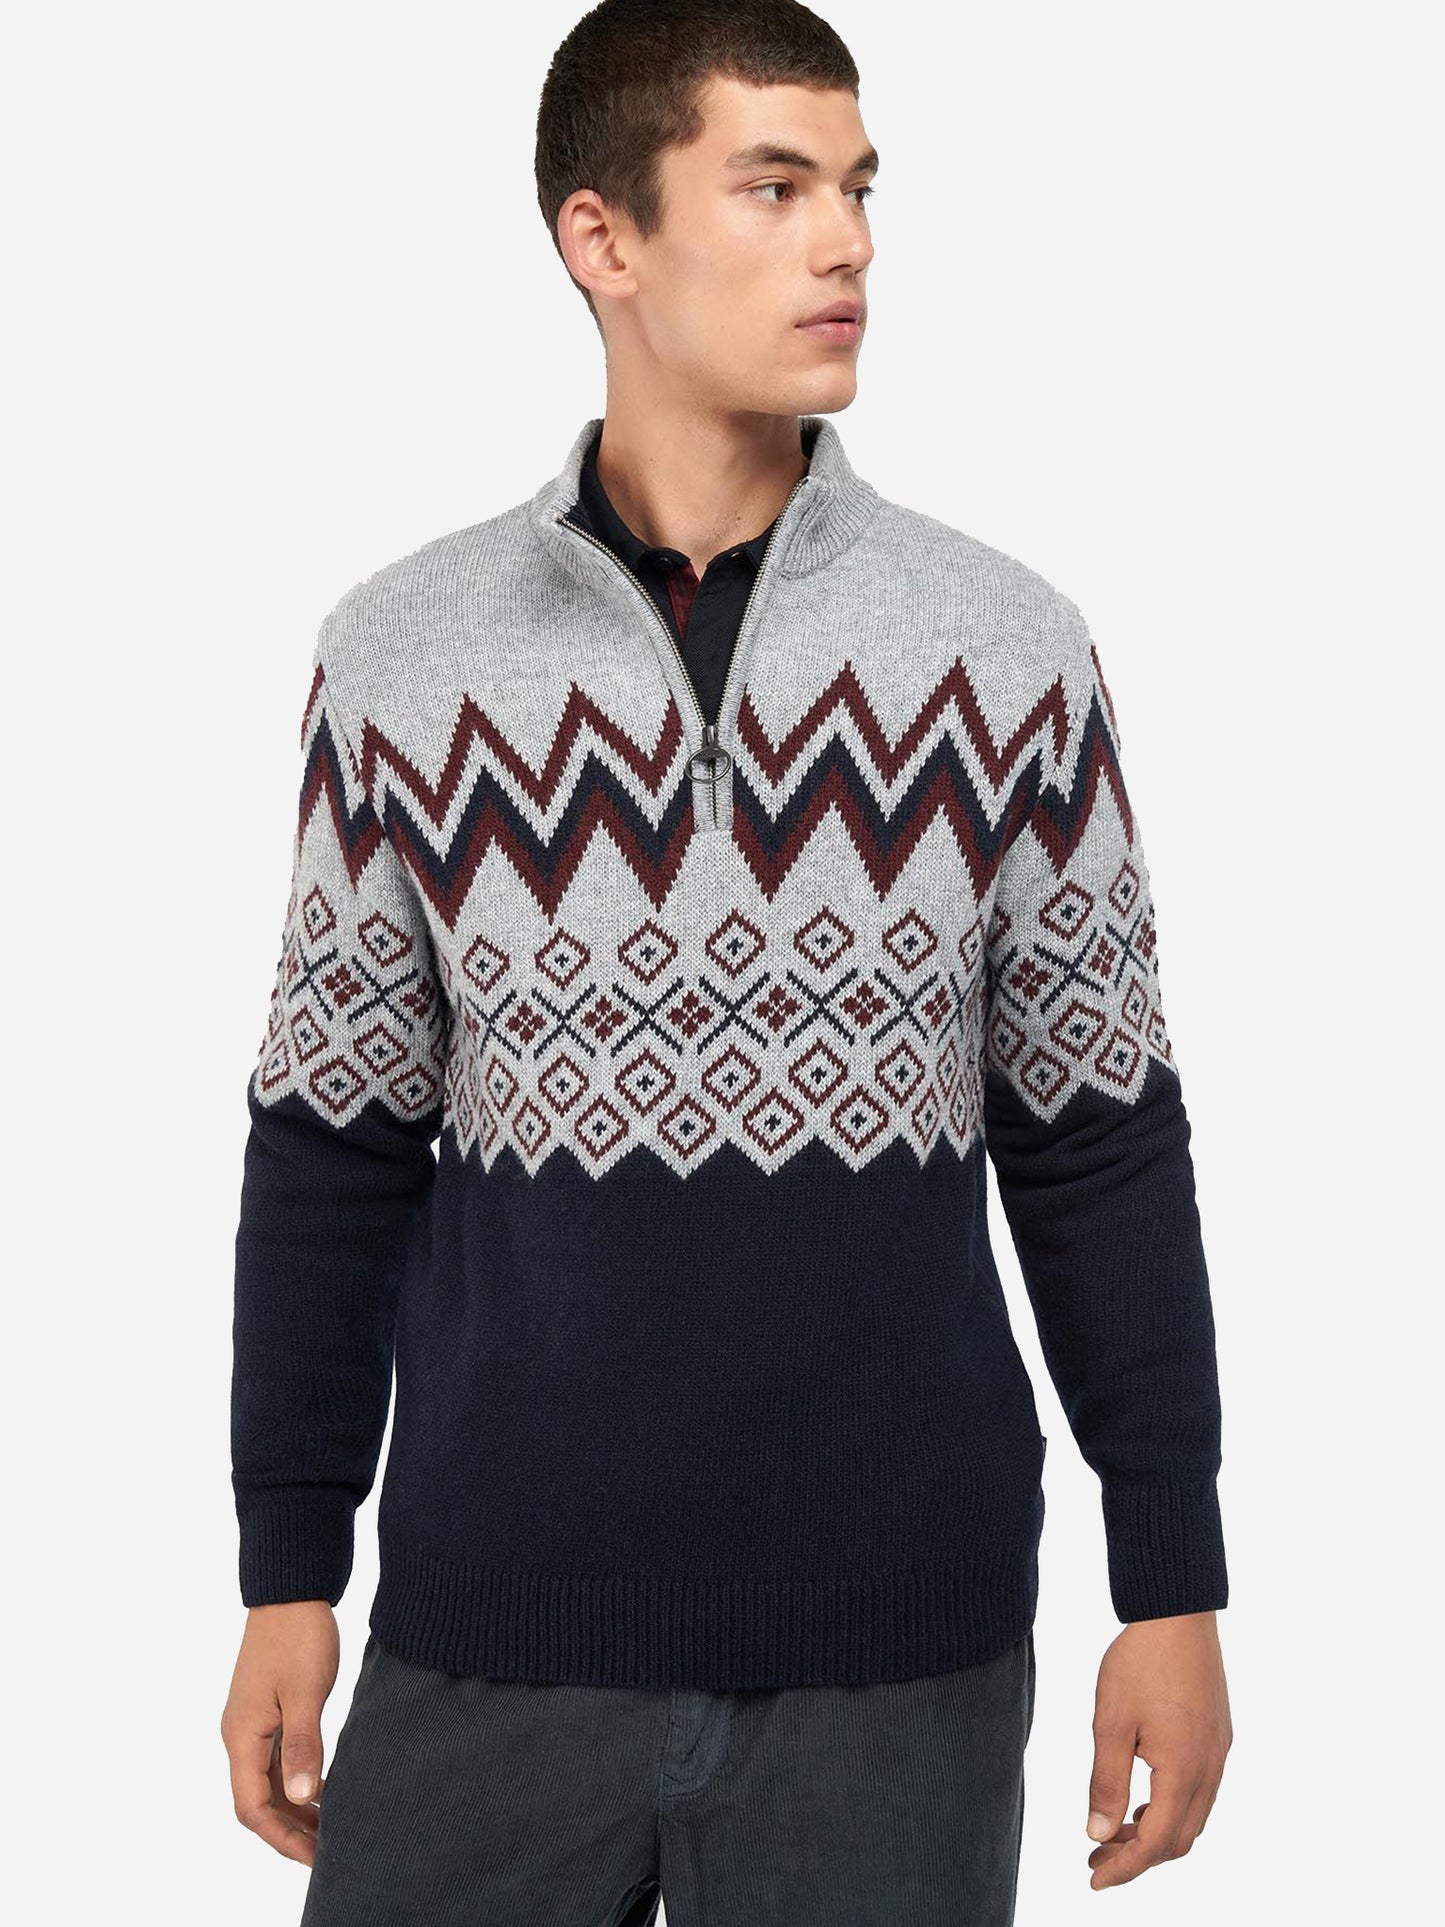 Barbour Men's Kilpin Half-Zip Sweater